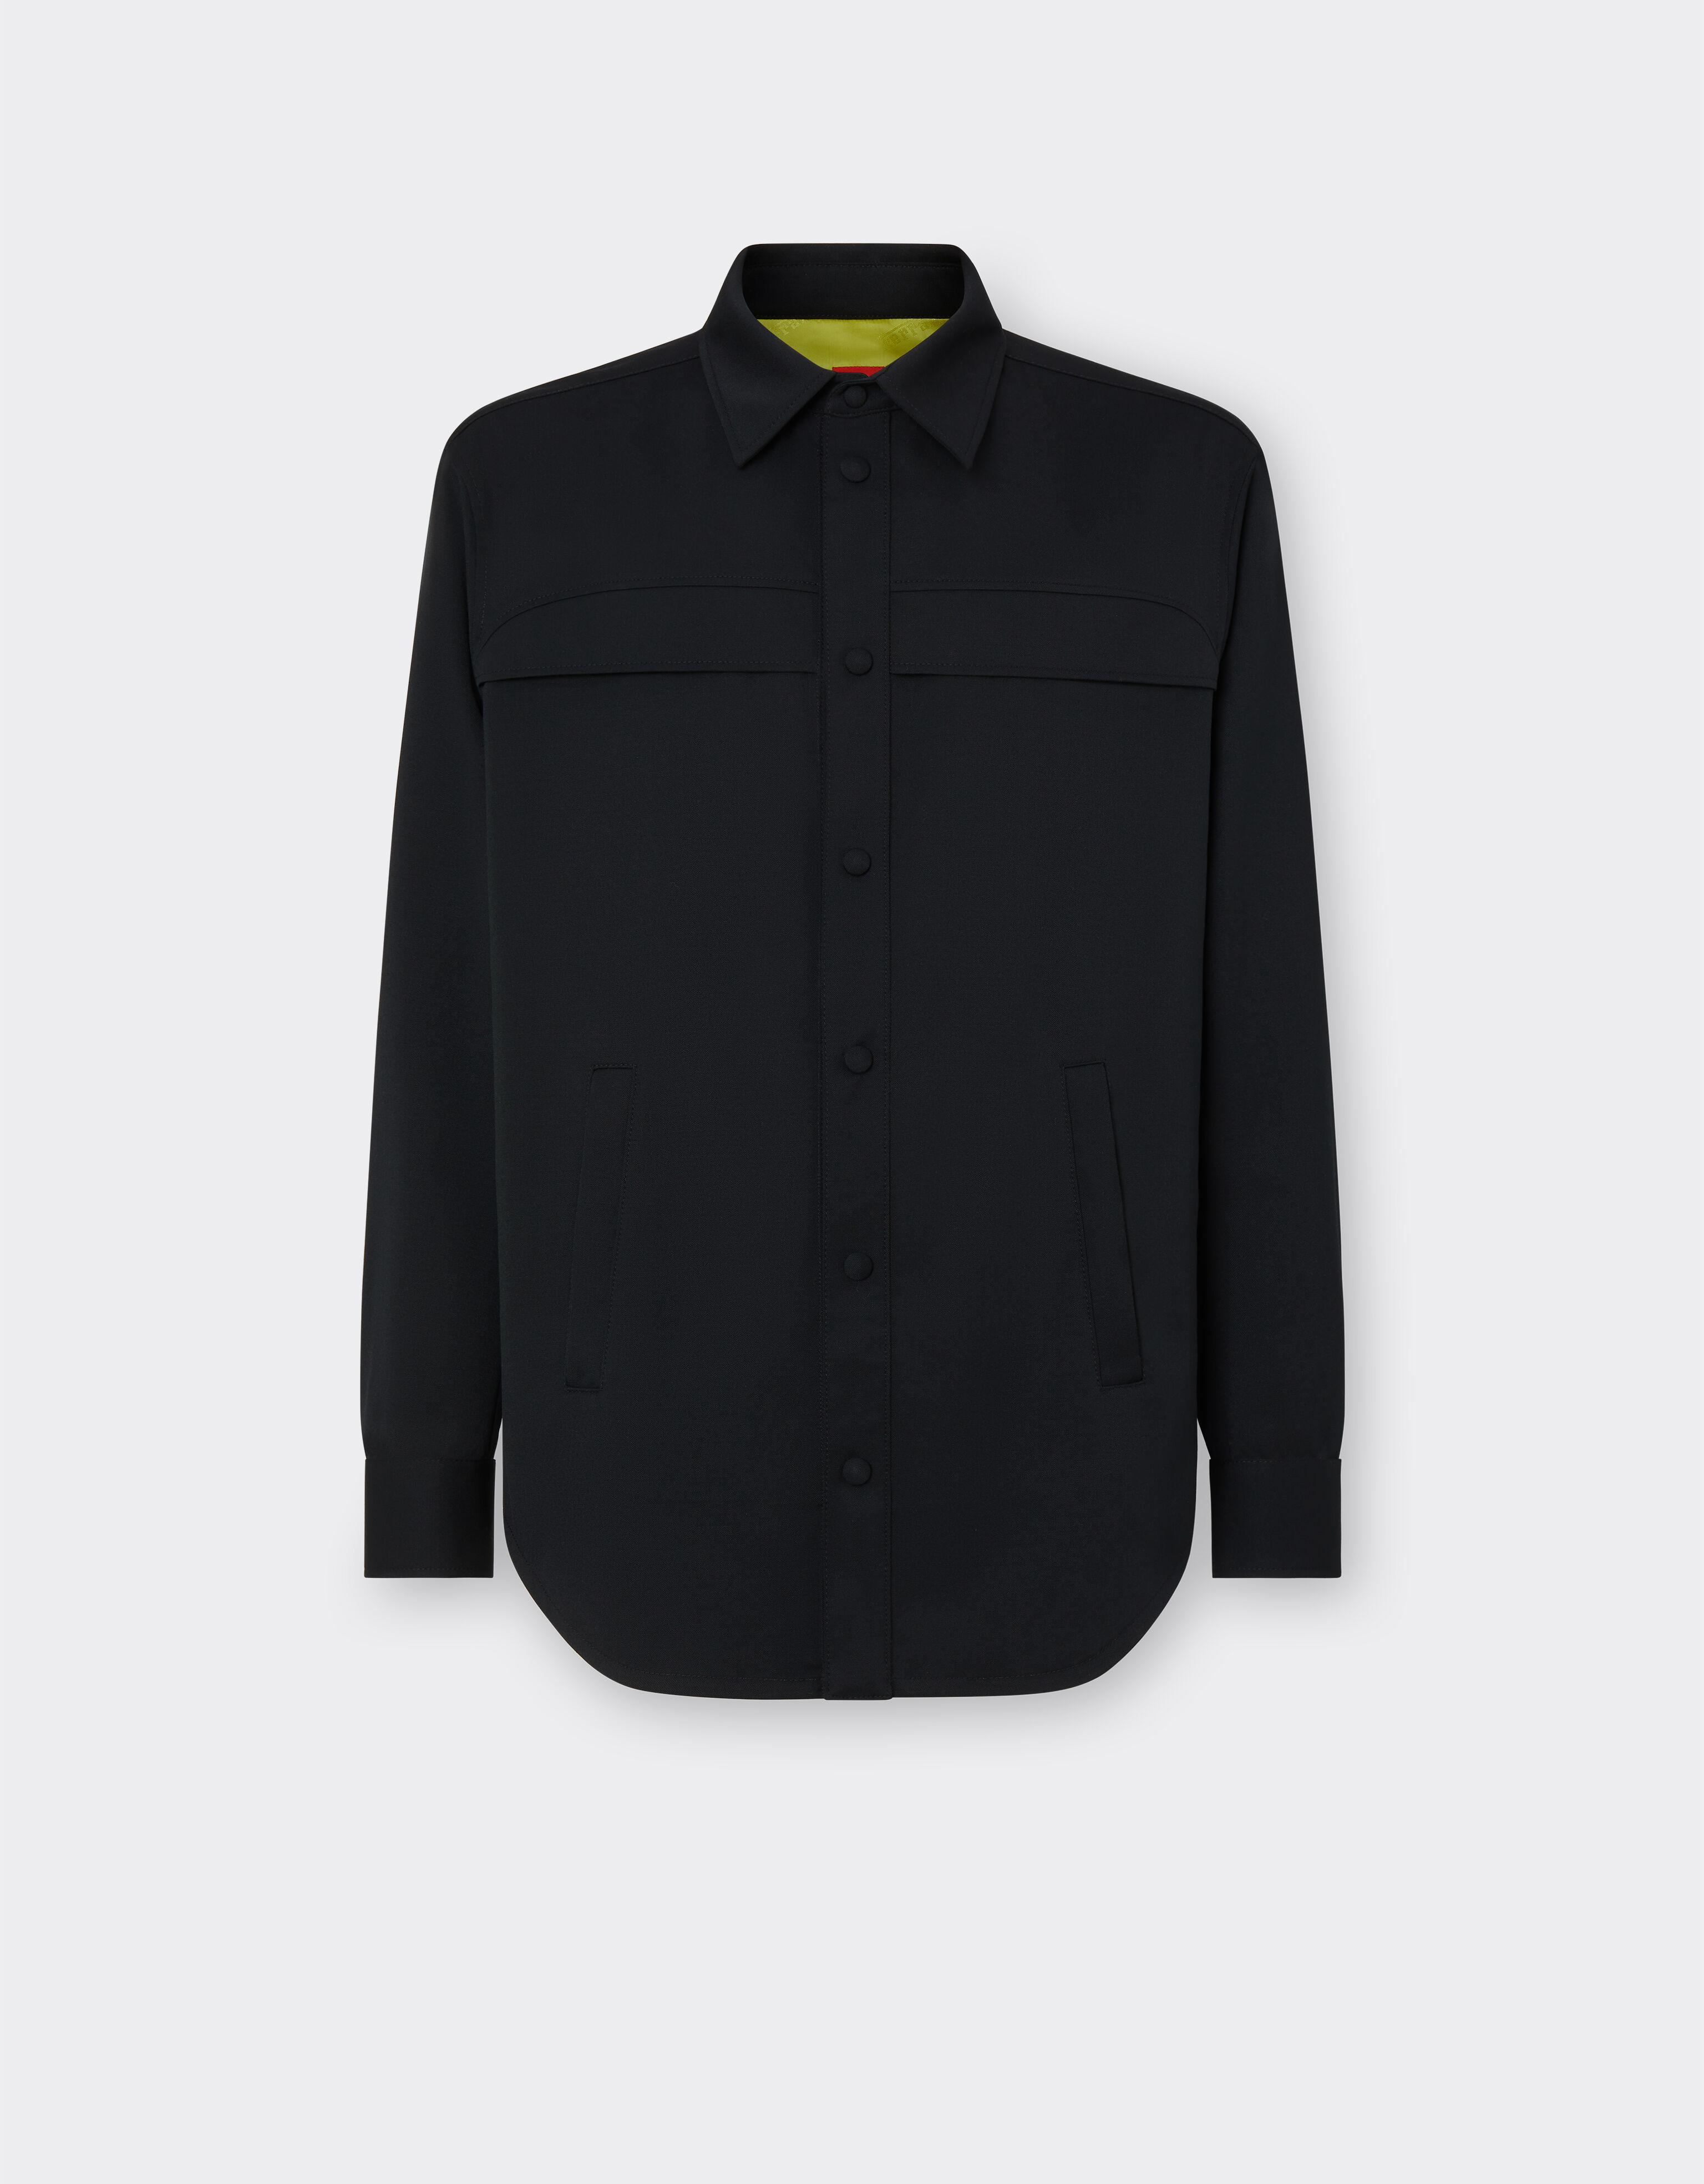 Ferrari Overshirt-Jacke aus Wolle und Nylon Schwarz 20517f